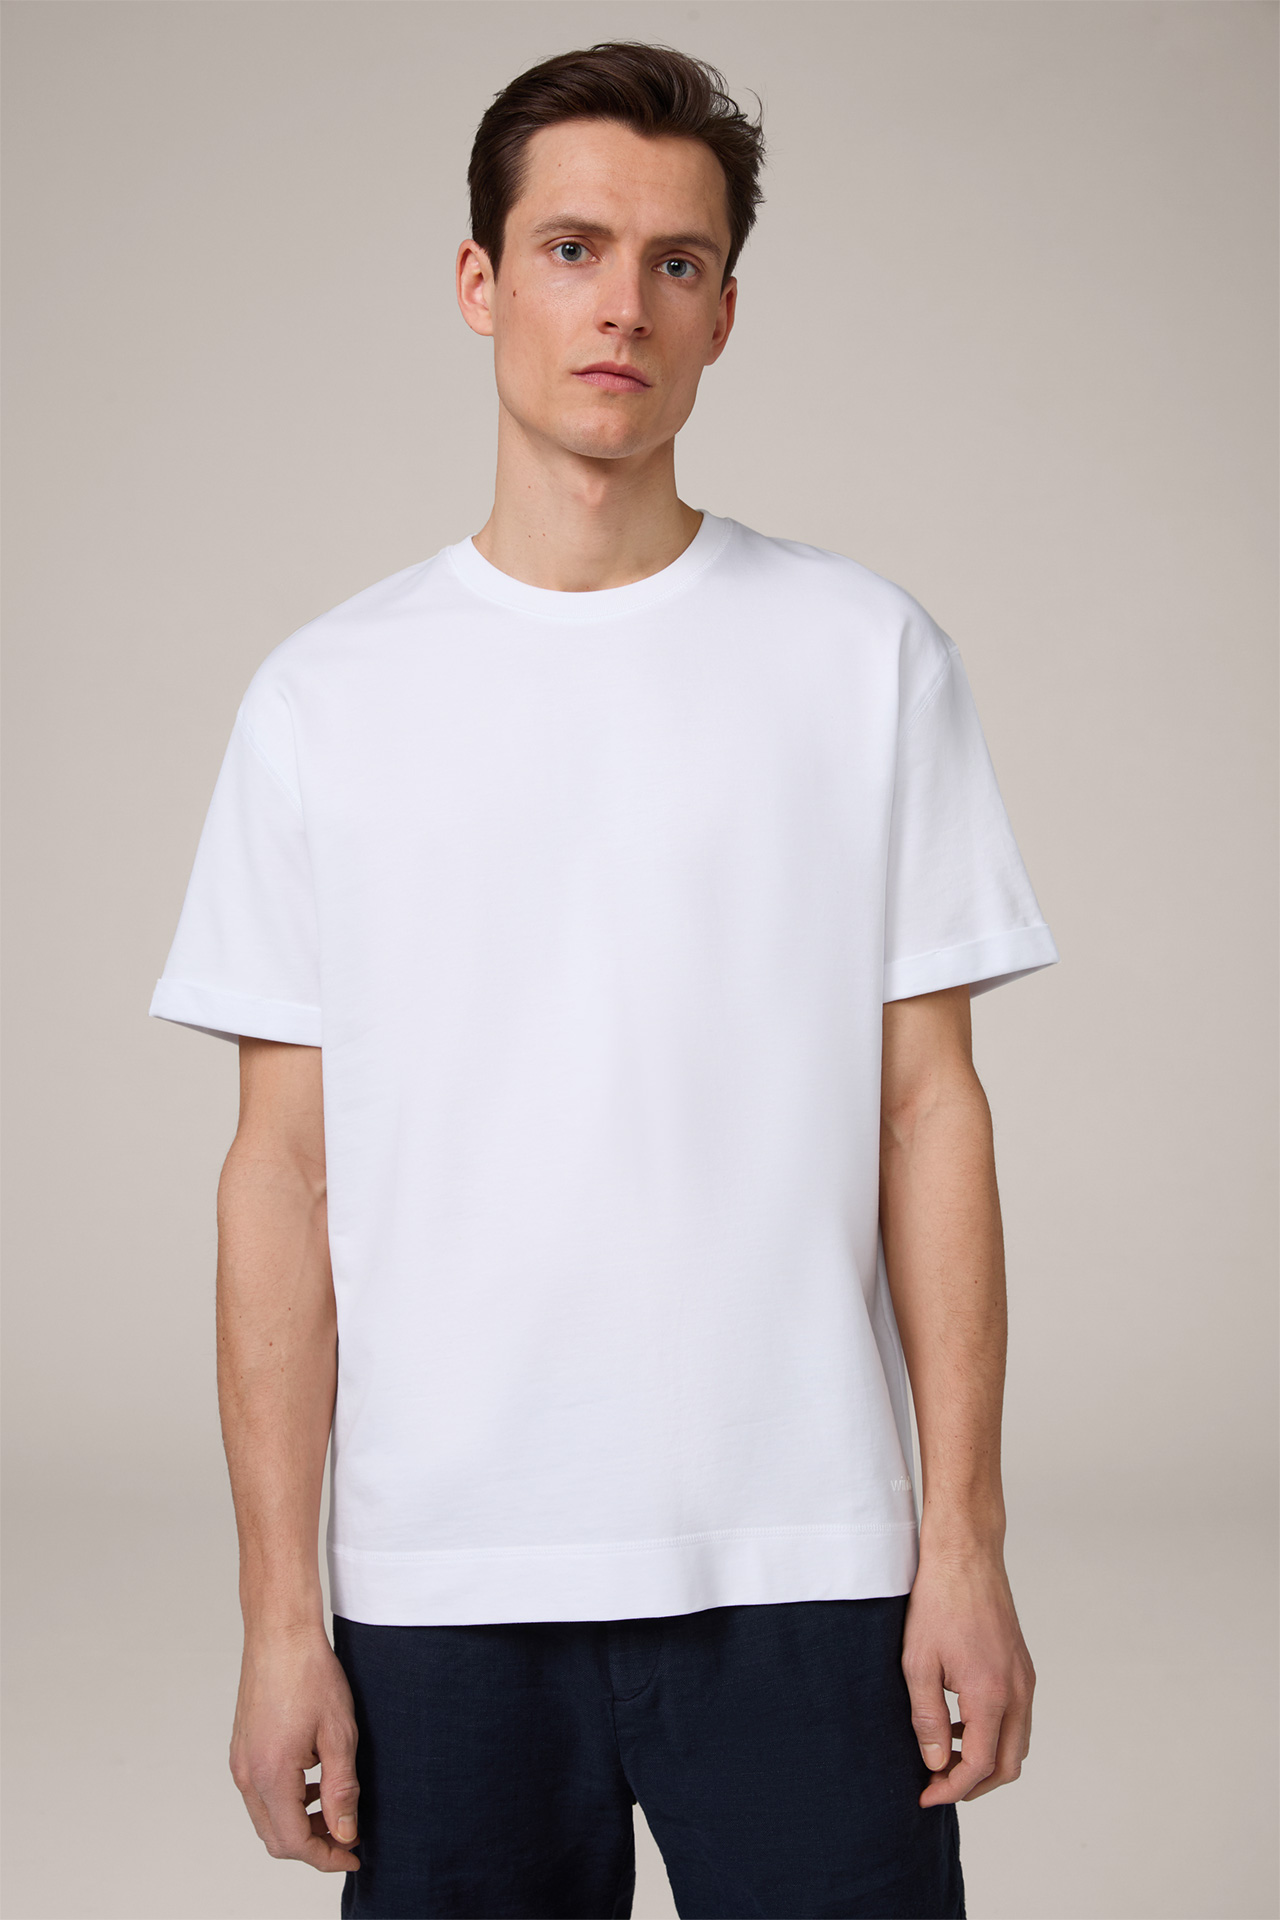 Sevo Lightweight Cotton Sweatshirt T-Shirt in White